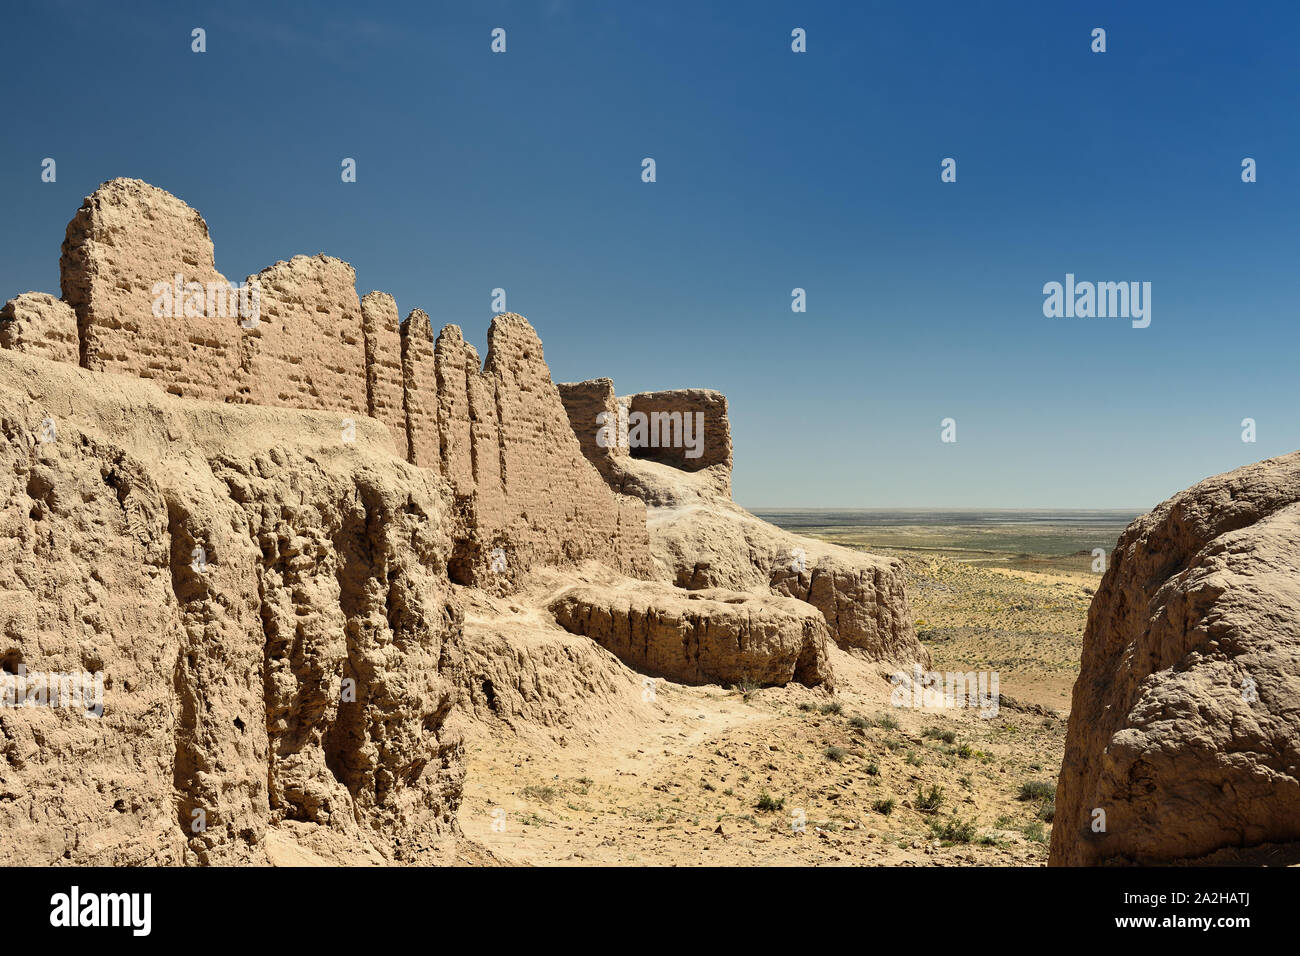 The largest ruins castles of ancient Khorezm – Ayaz - Kala, II century AD – a heyday of the Kushan Empire, Uzbekistan. Stock Photo